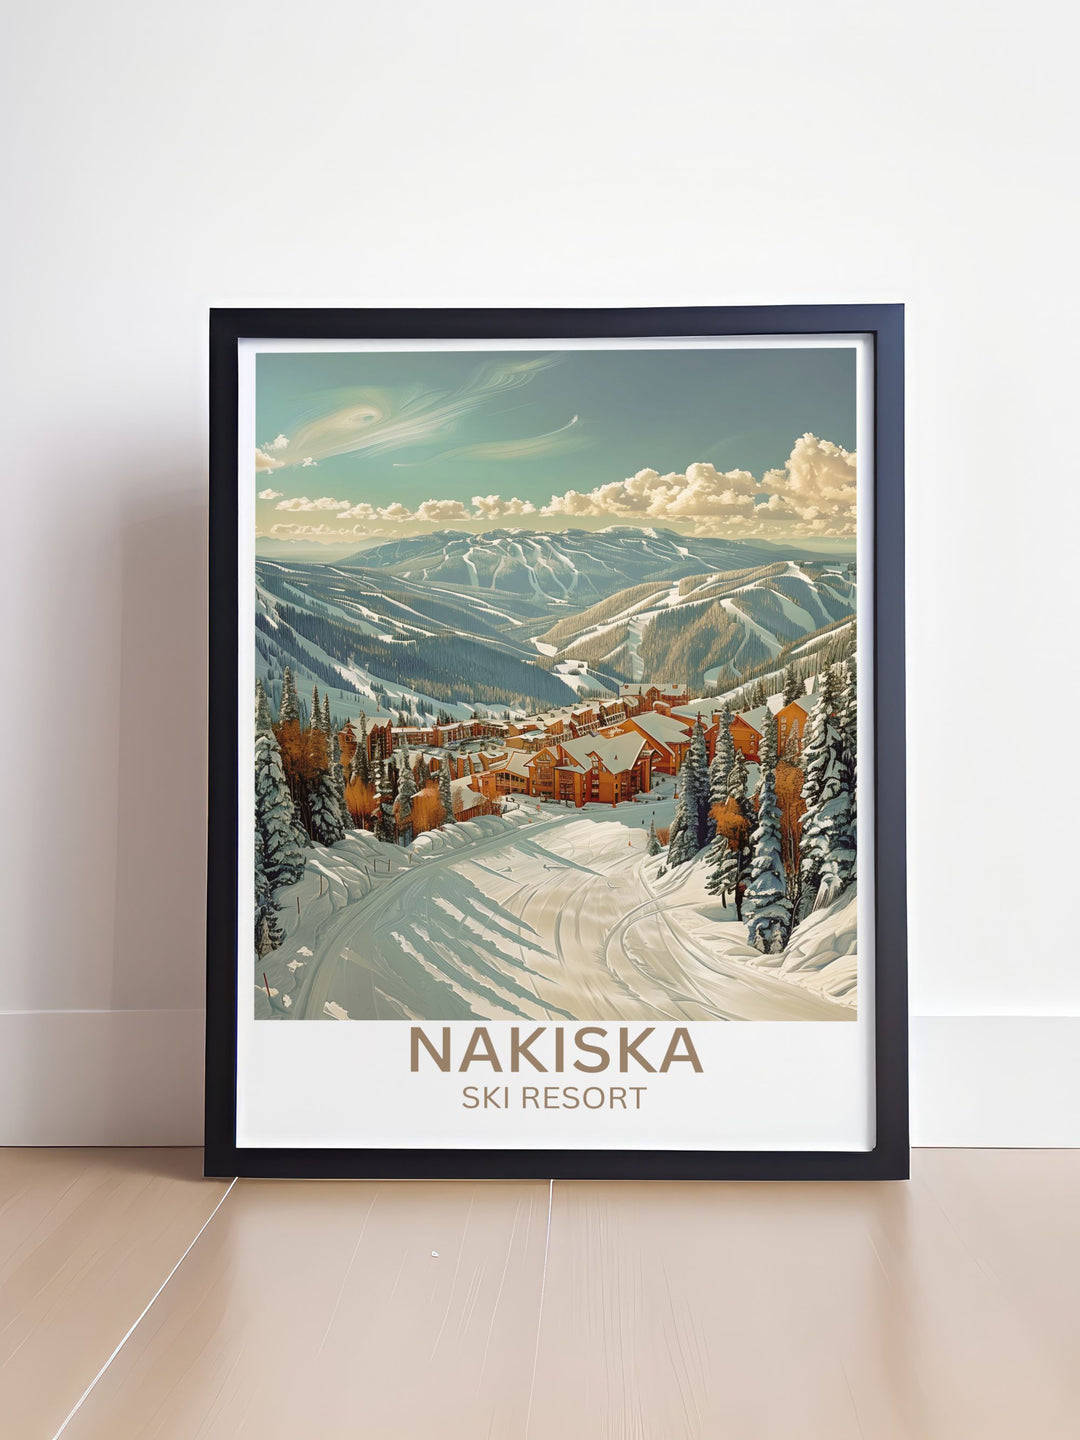 Serene Mount Allan landscape framed art, showcasing its breathtaking peaks in winter attire.